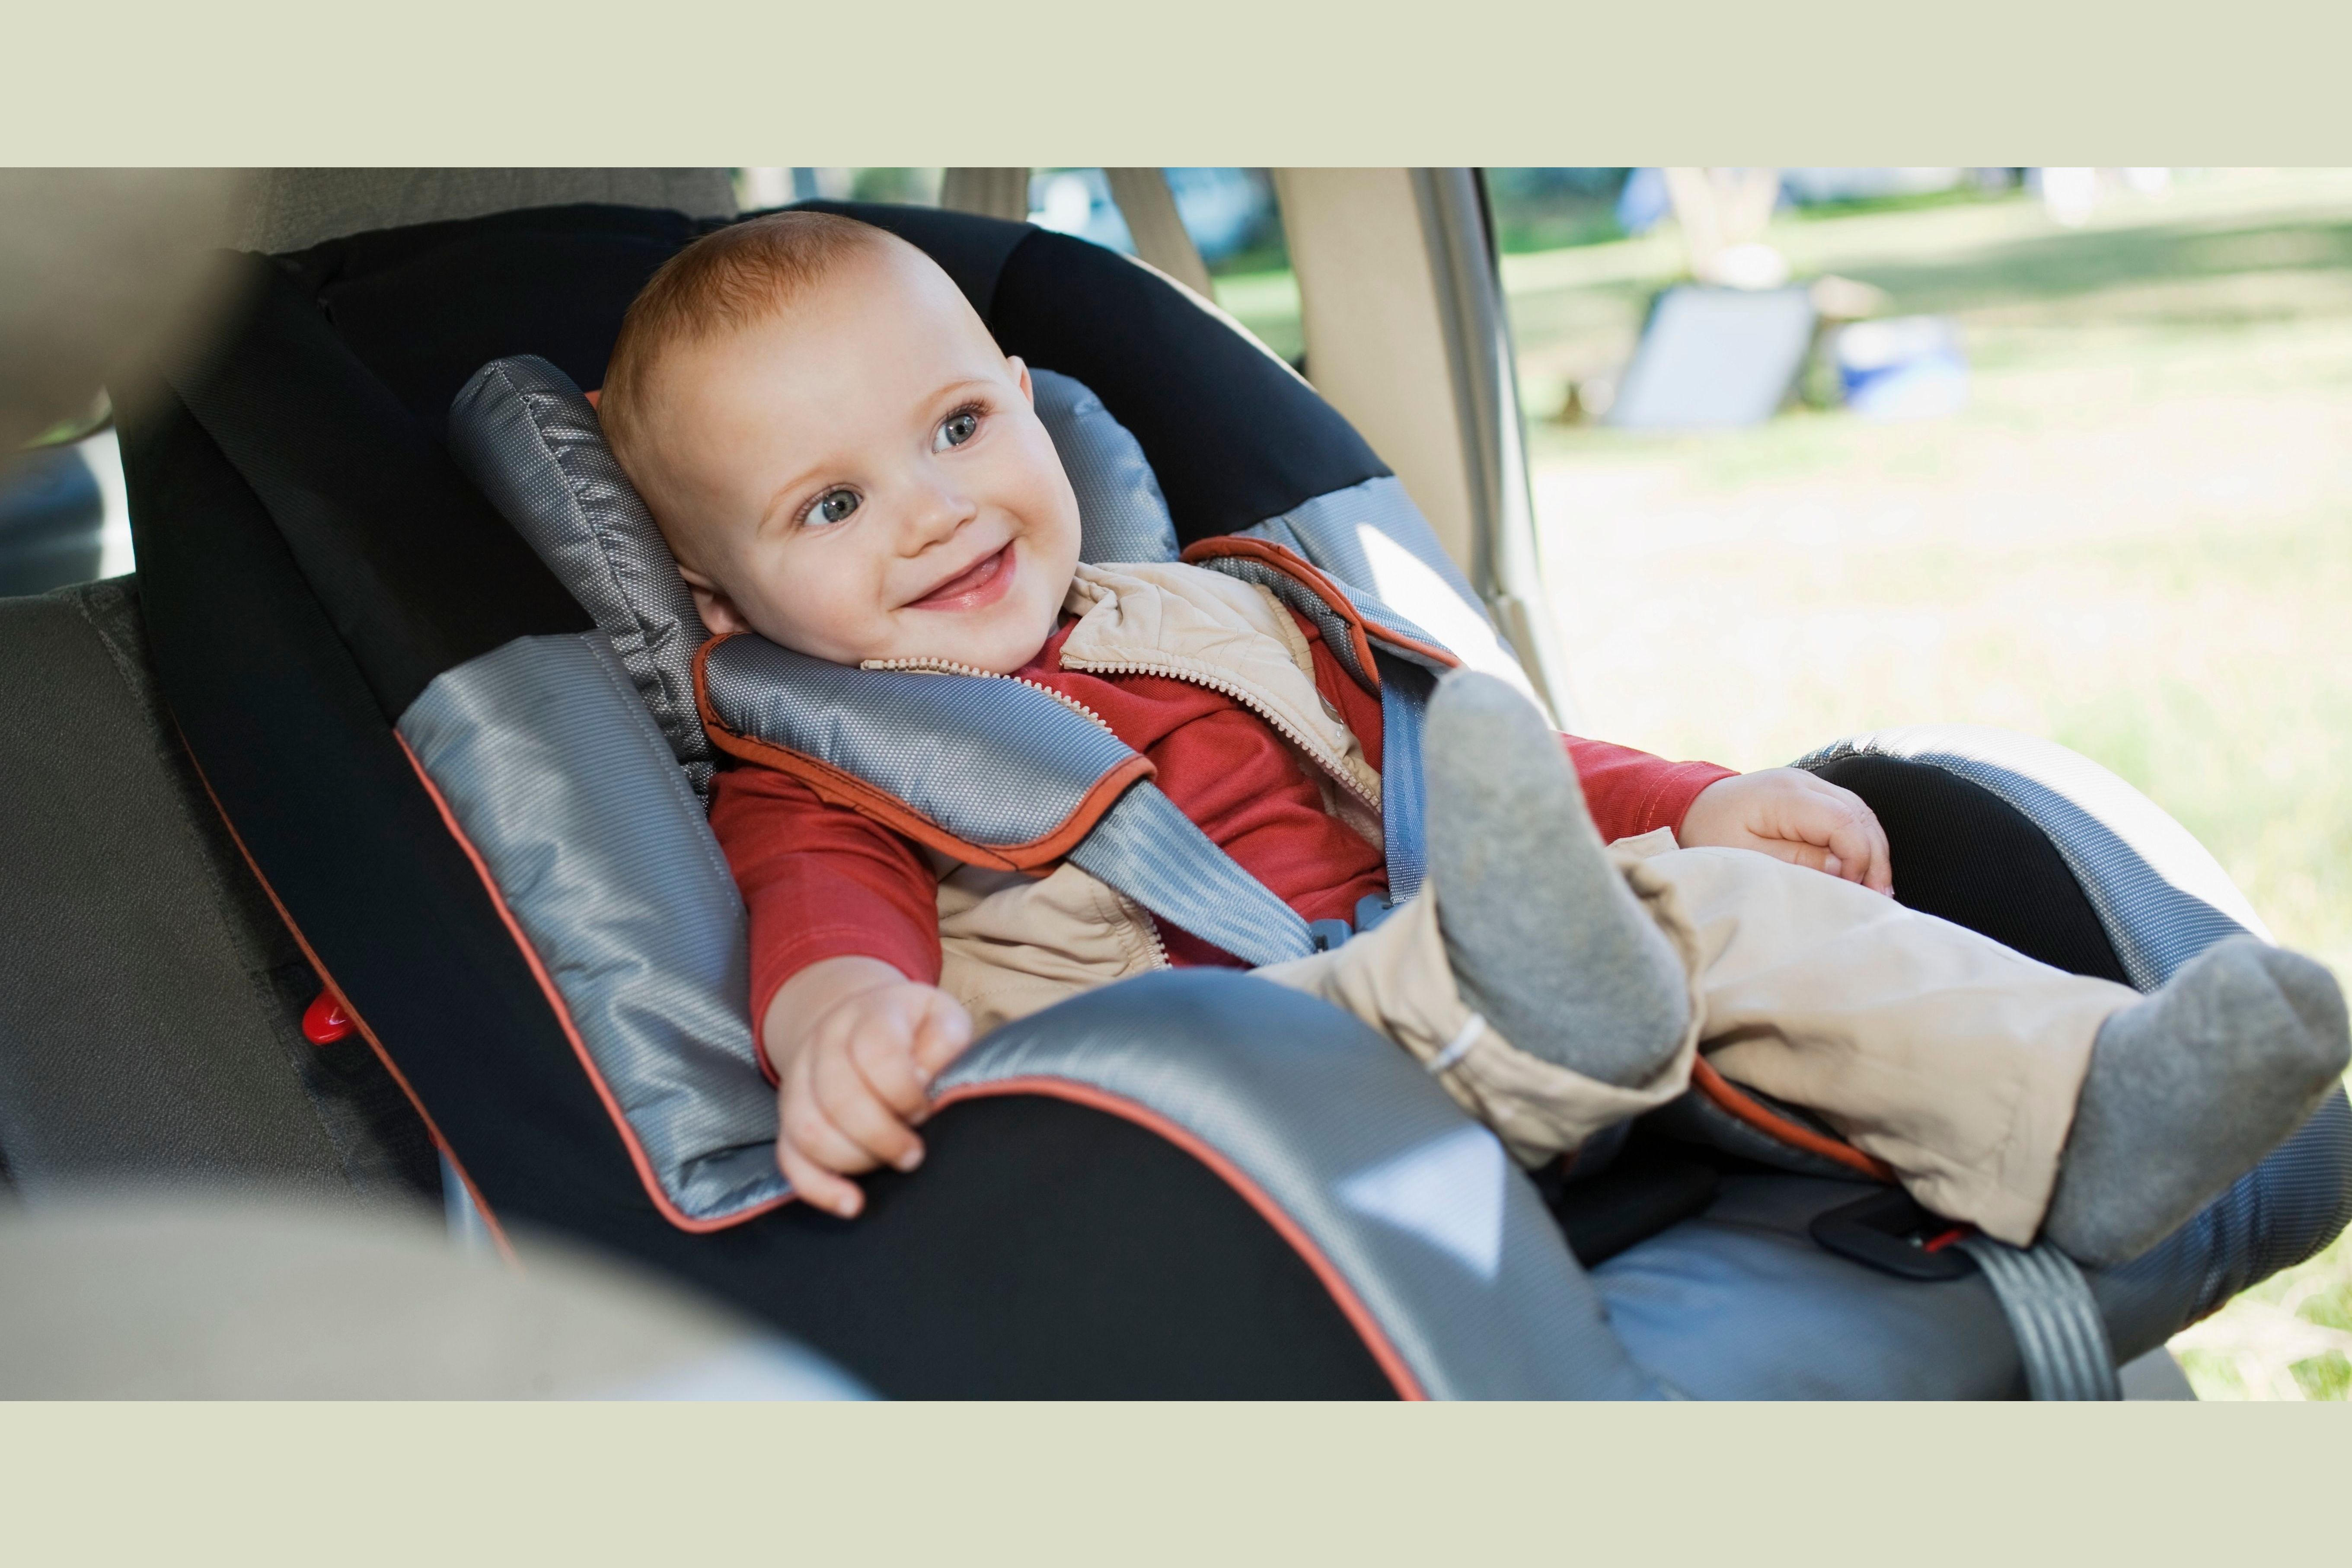 Пристегиваем ребенка в машине. Детское кресло. Автокресло для детей. Ребенок в детском кресле. Детские ремни безопасности для автомобиля.